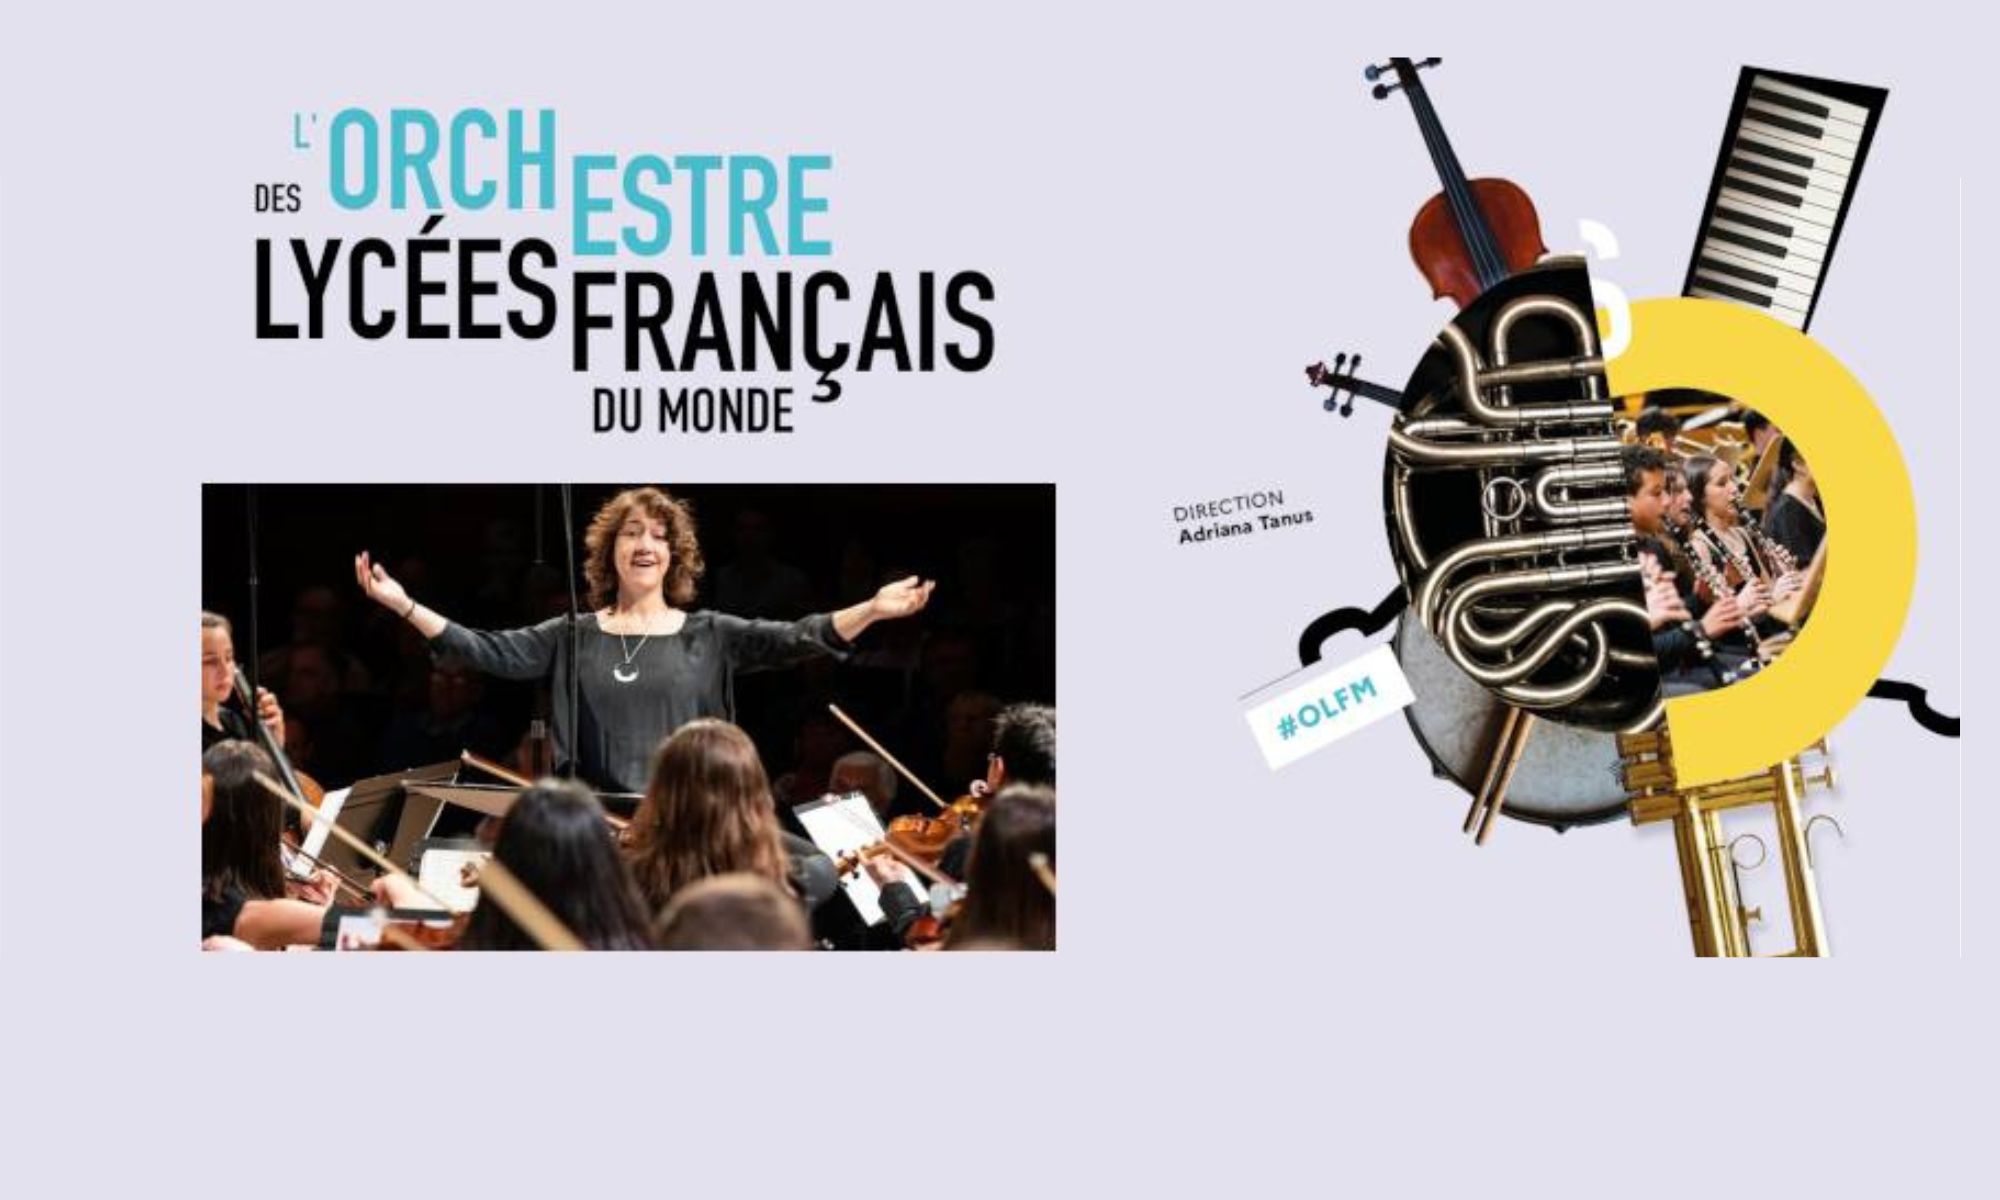 Appel aux jeunes talents pour la 10e saison de l'Orchestre des lycées français du monde !